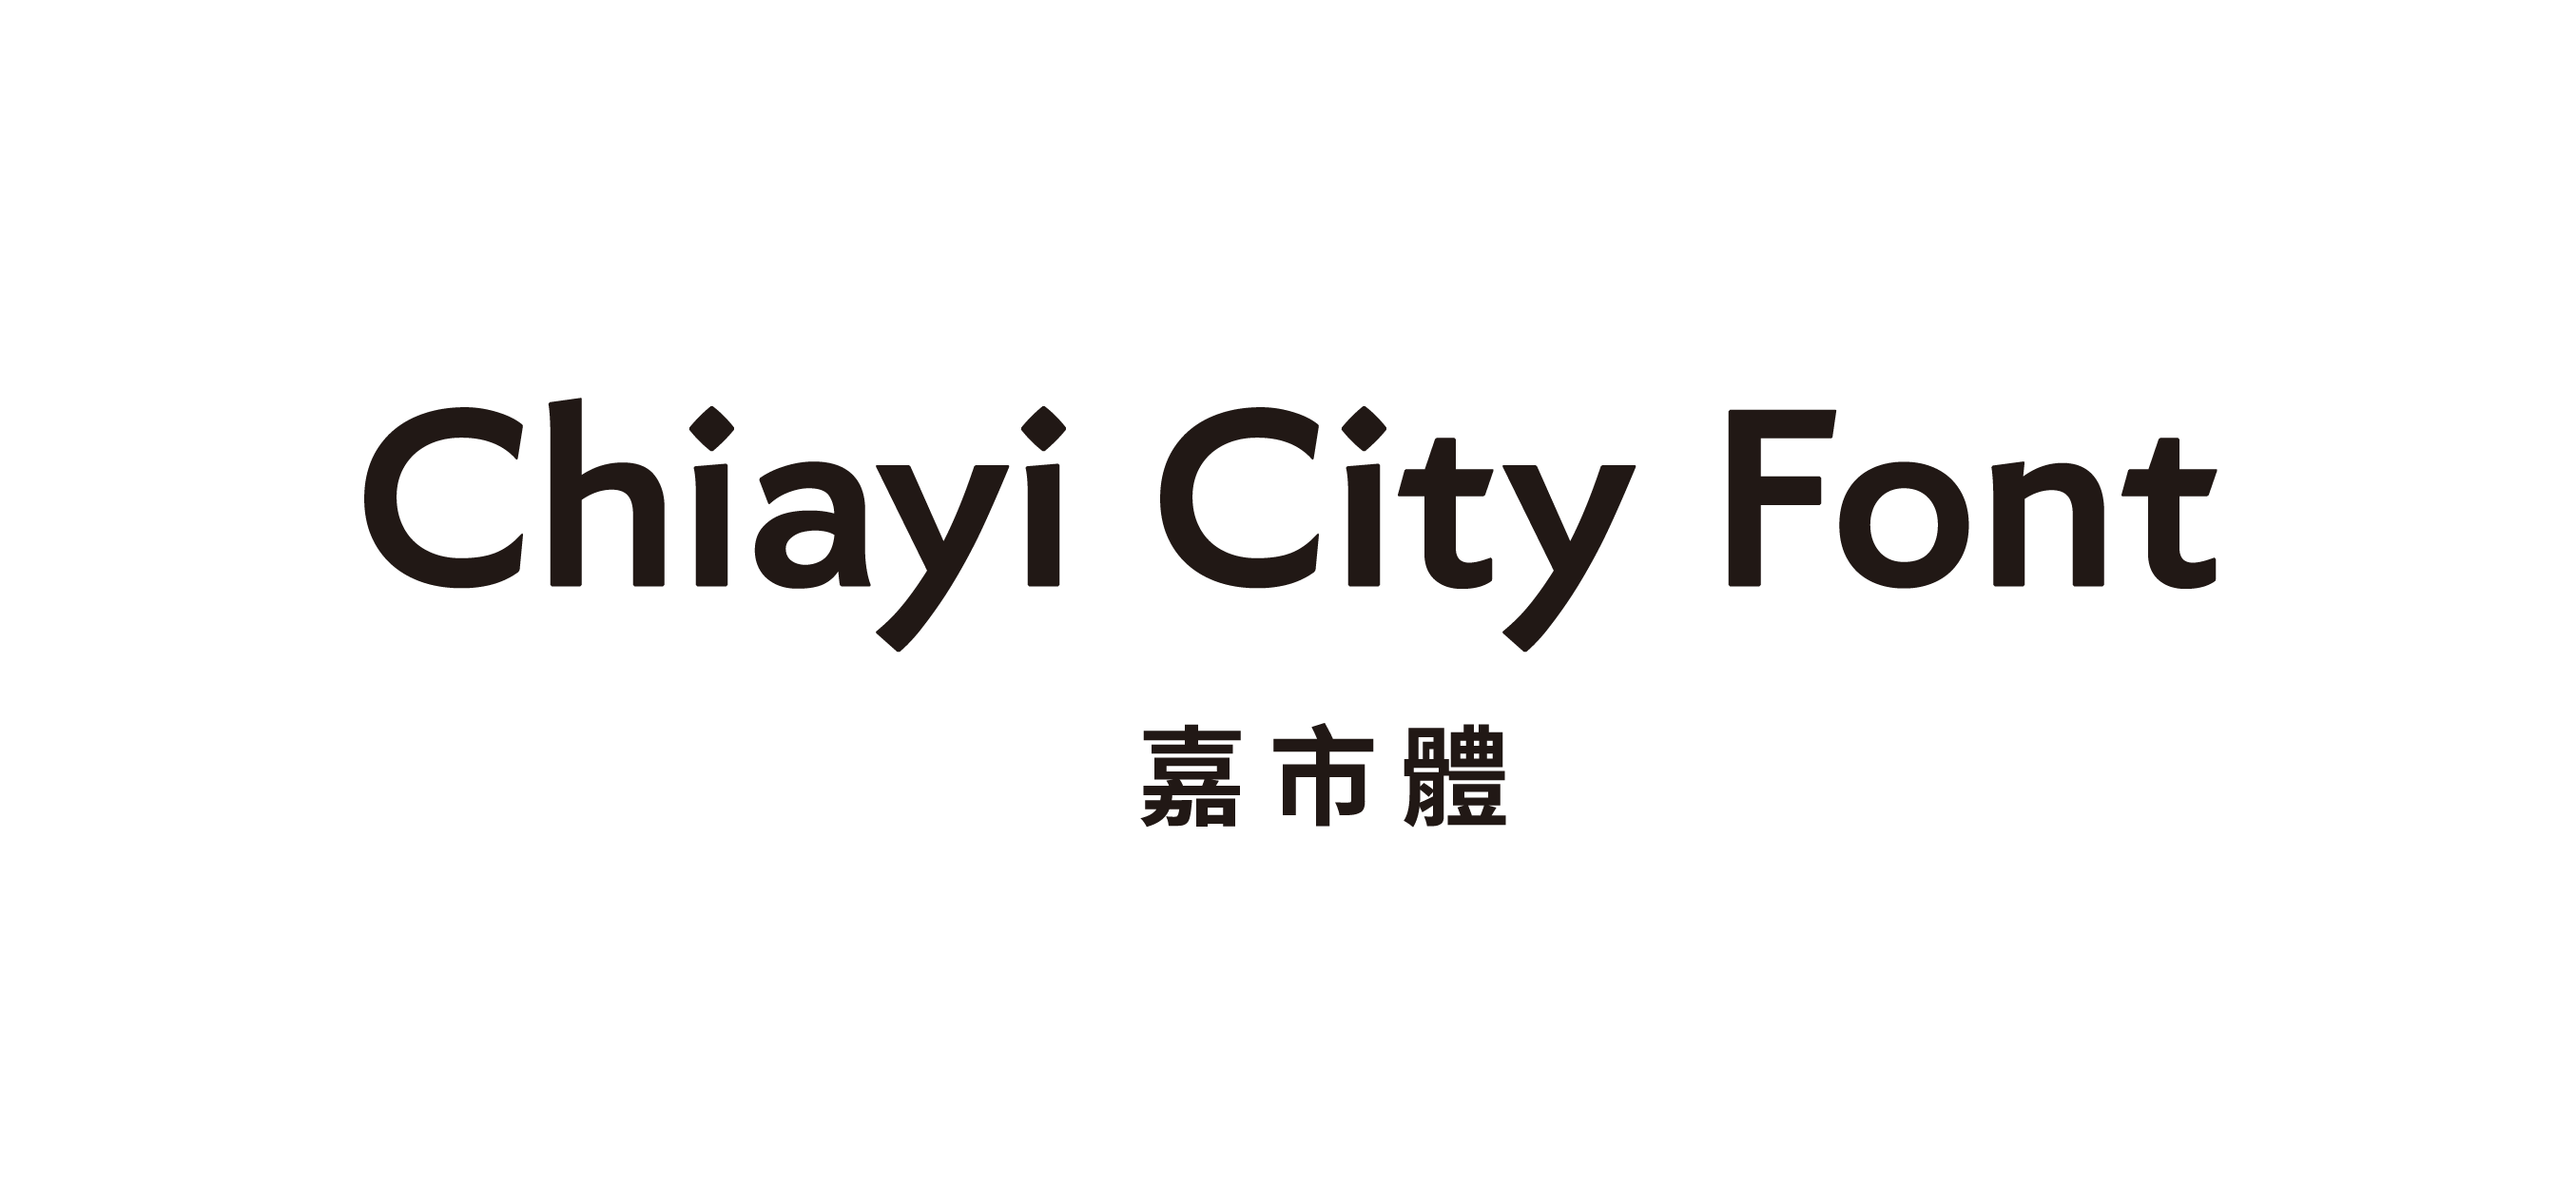 《嘉市體 Chiayi City Font》─嘉義市送給全世界的禮物，全台第一個城市品牌標準字體